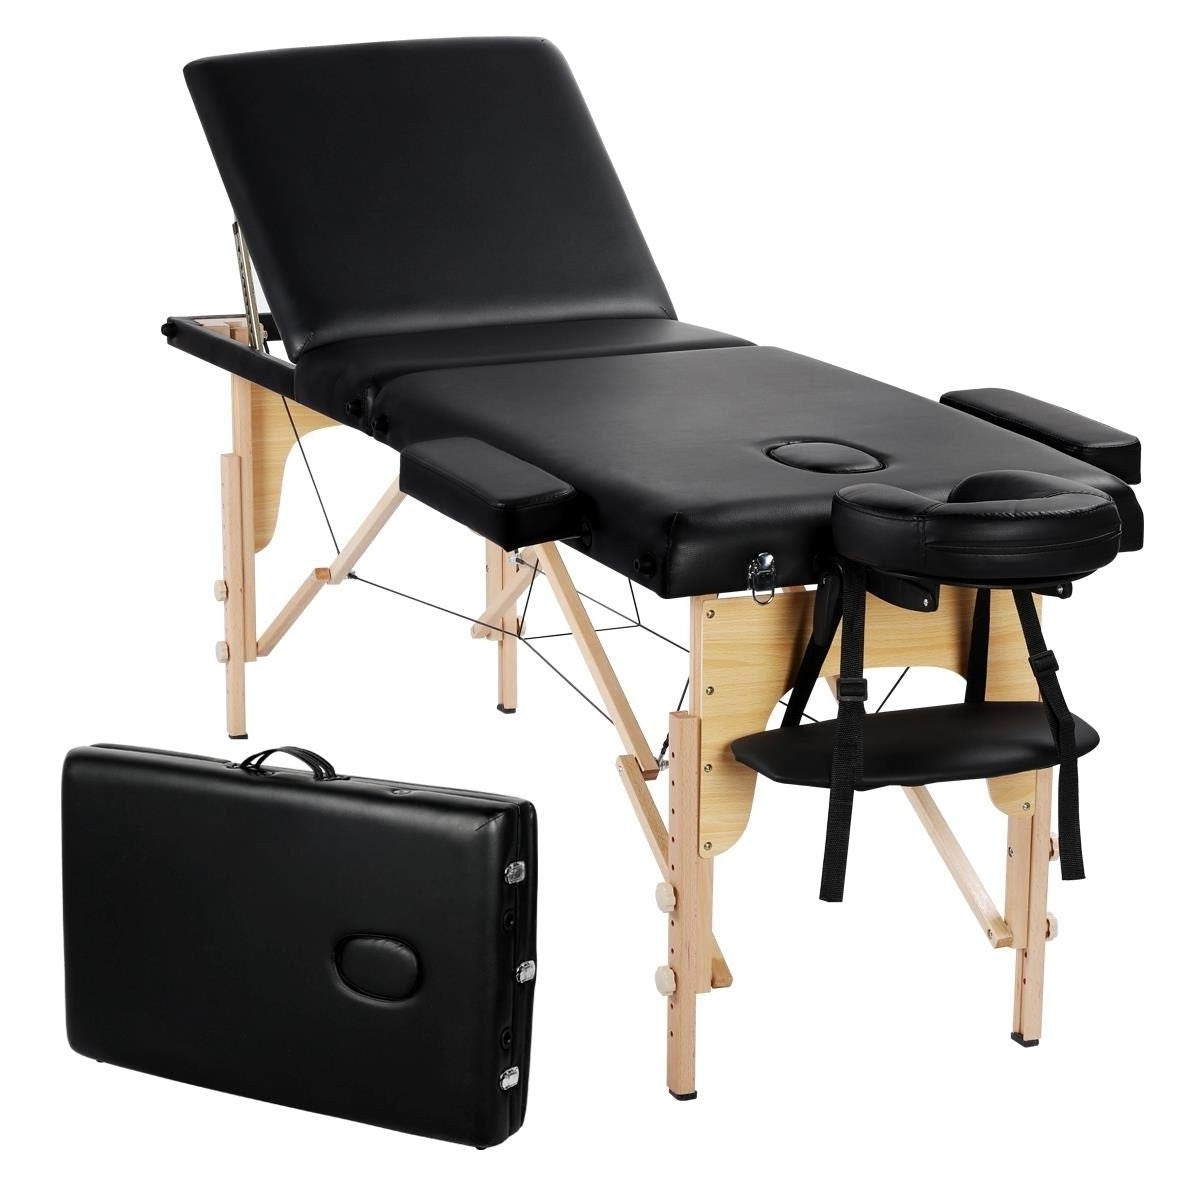 Black Adjustable Portable Massage Tattoo Folding Elevated Table